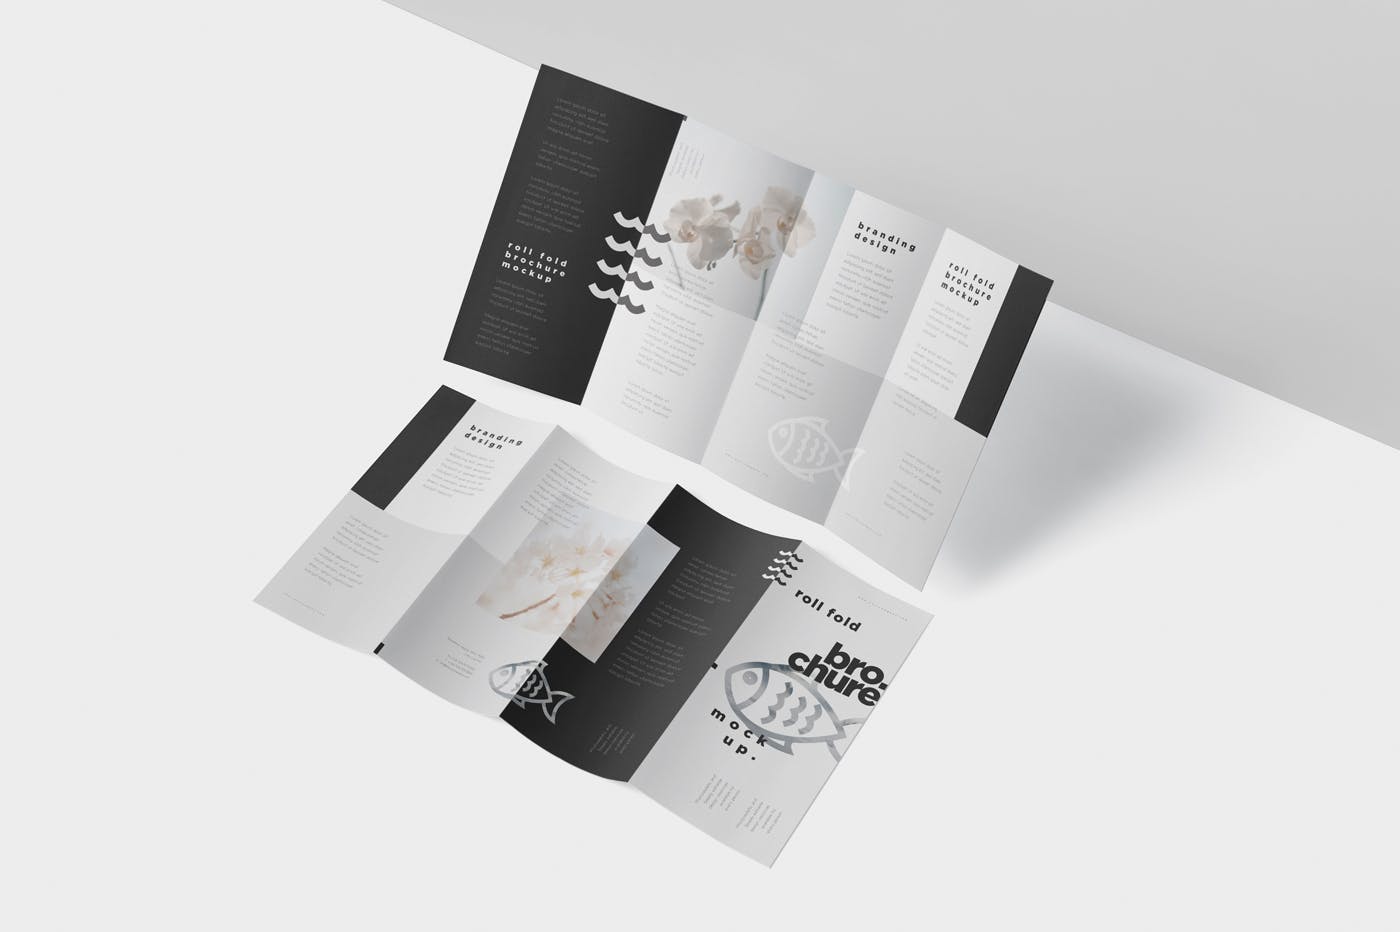 折叠设计风格企业传单/宣传册设计样机素材库精选 Roll-Fold Brochure Mockup – DL DIN Lang Size插图(3)